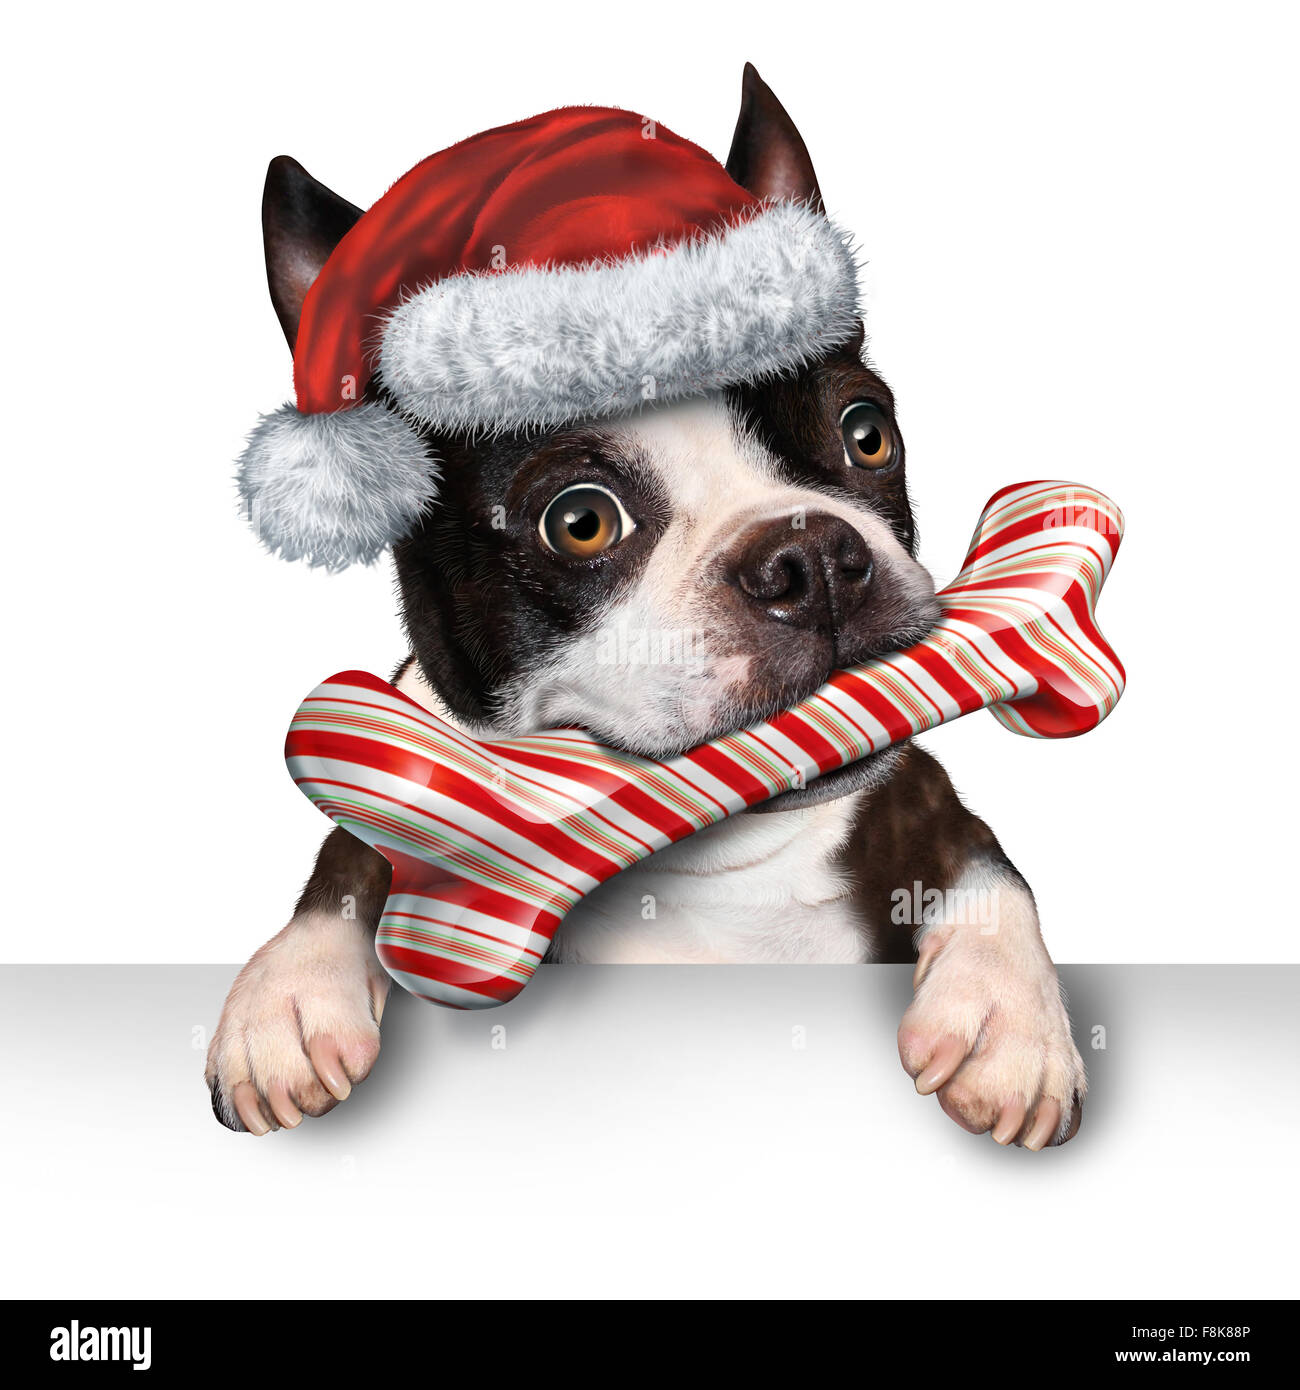 Vacances de Noël Animaux chien signe pour la médecine vétérinaire d'hiver fête de la publicité et des message avec un joli chien mordre dans un os fait de canne de Noël avec un chapeau de Père Noël accroché sur une étiquette blanche horizontale avec l'exemplaire de l'espace. Banque D'Images